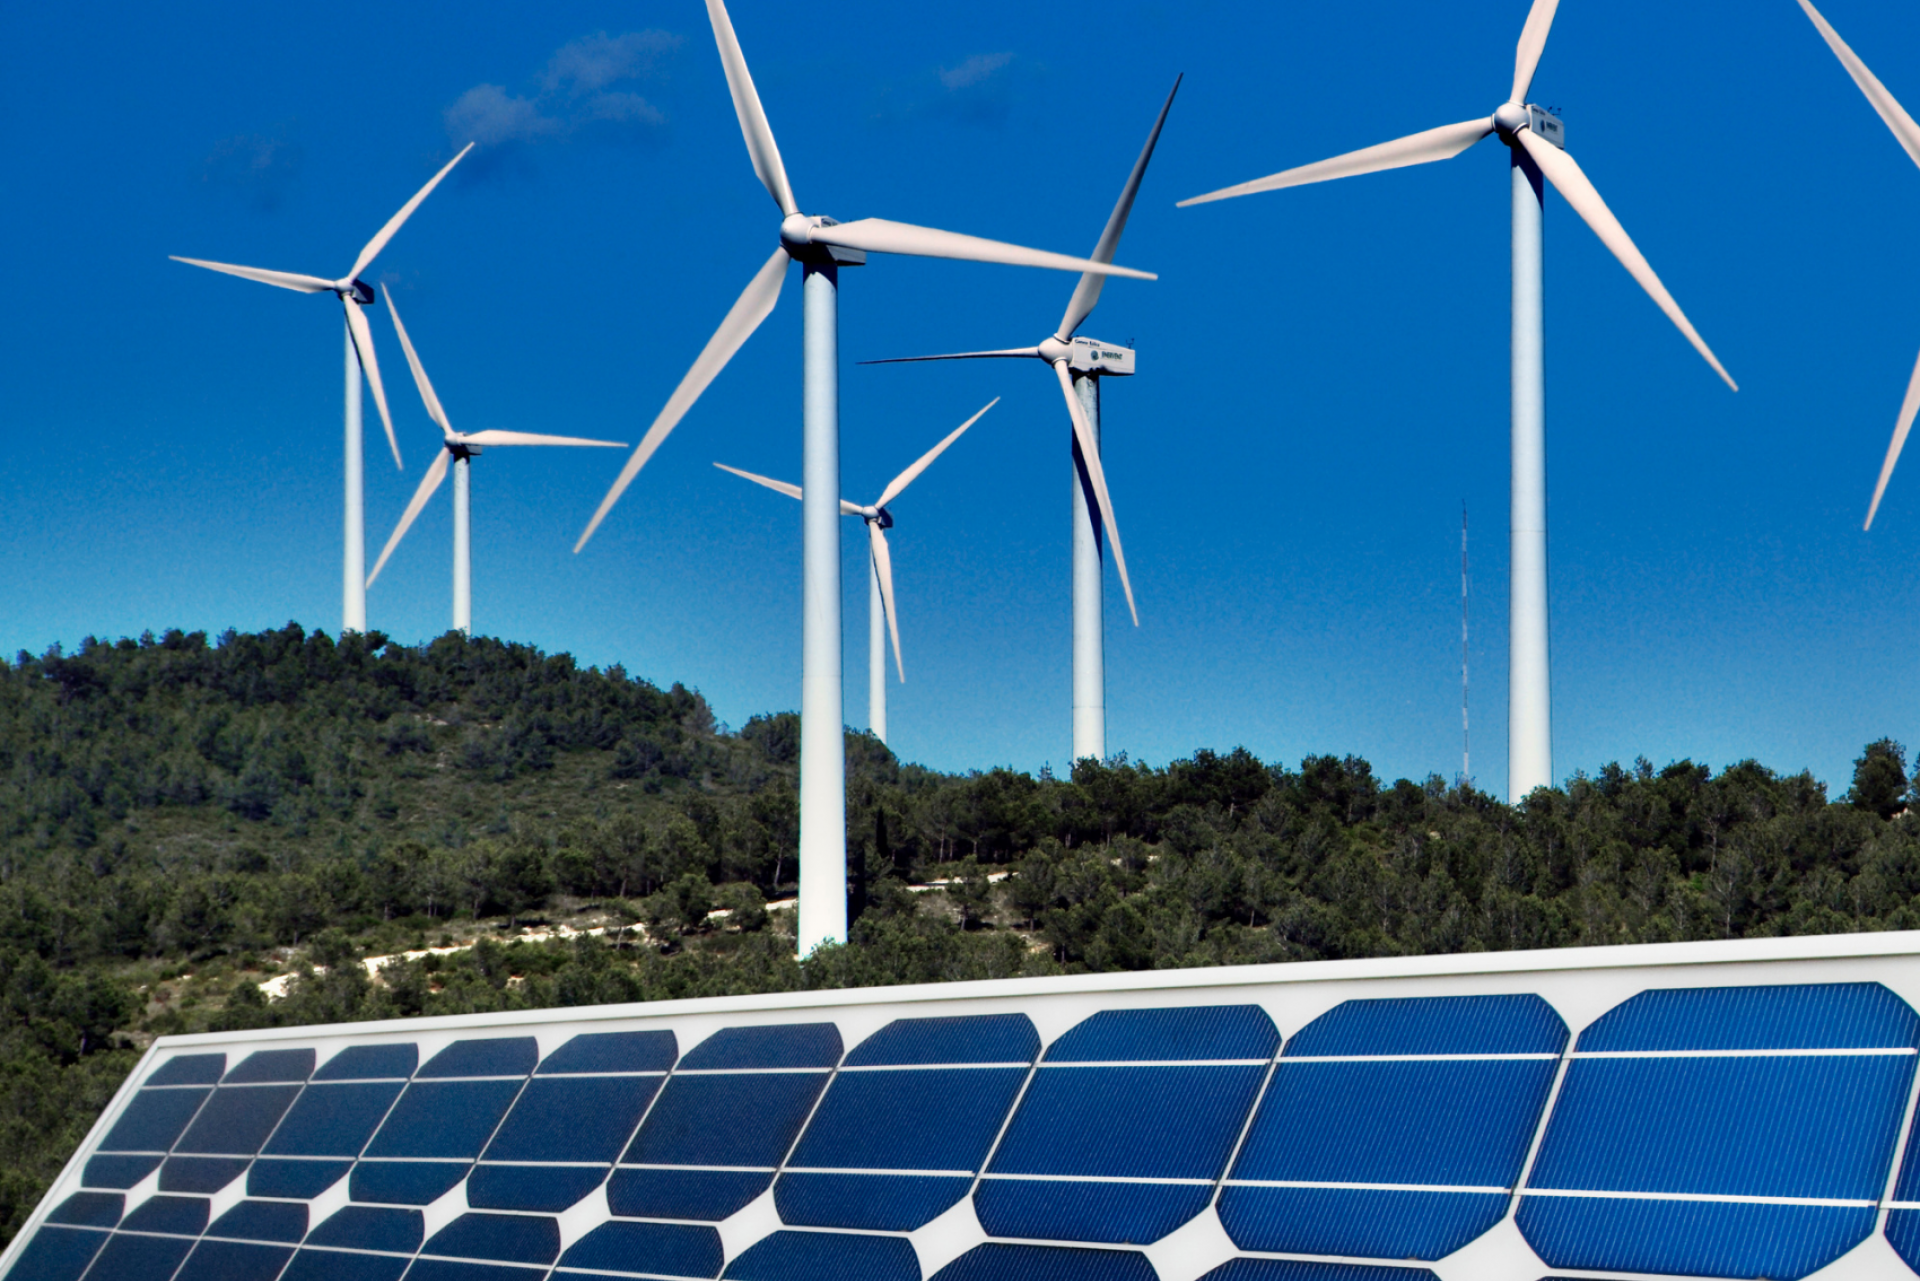 Novas usinas solares e eólicas adicionaram 4 GW de capacidade no primeiro semestre. Na imagem: Turbinas eólicas e placas solares fotovoltaicas (Foto: Divulgação/Ember)